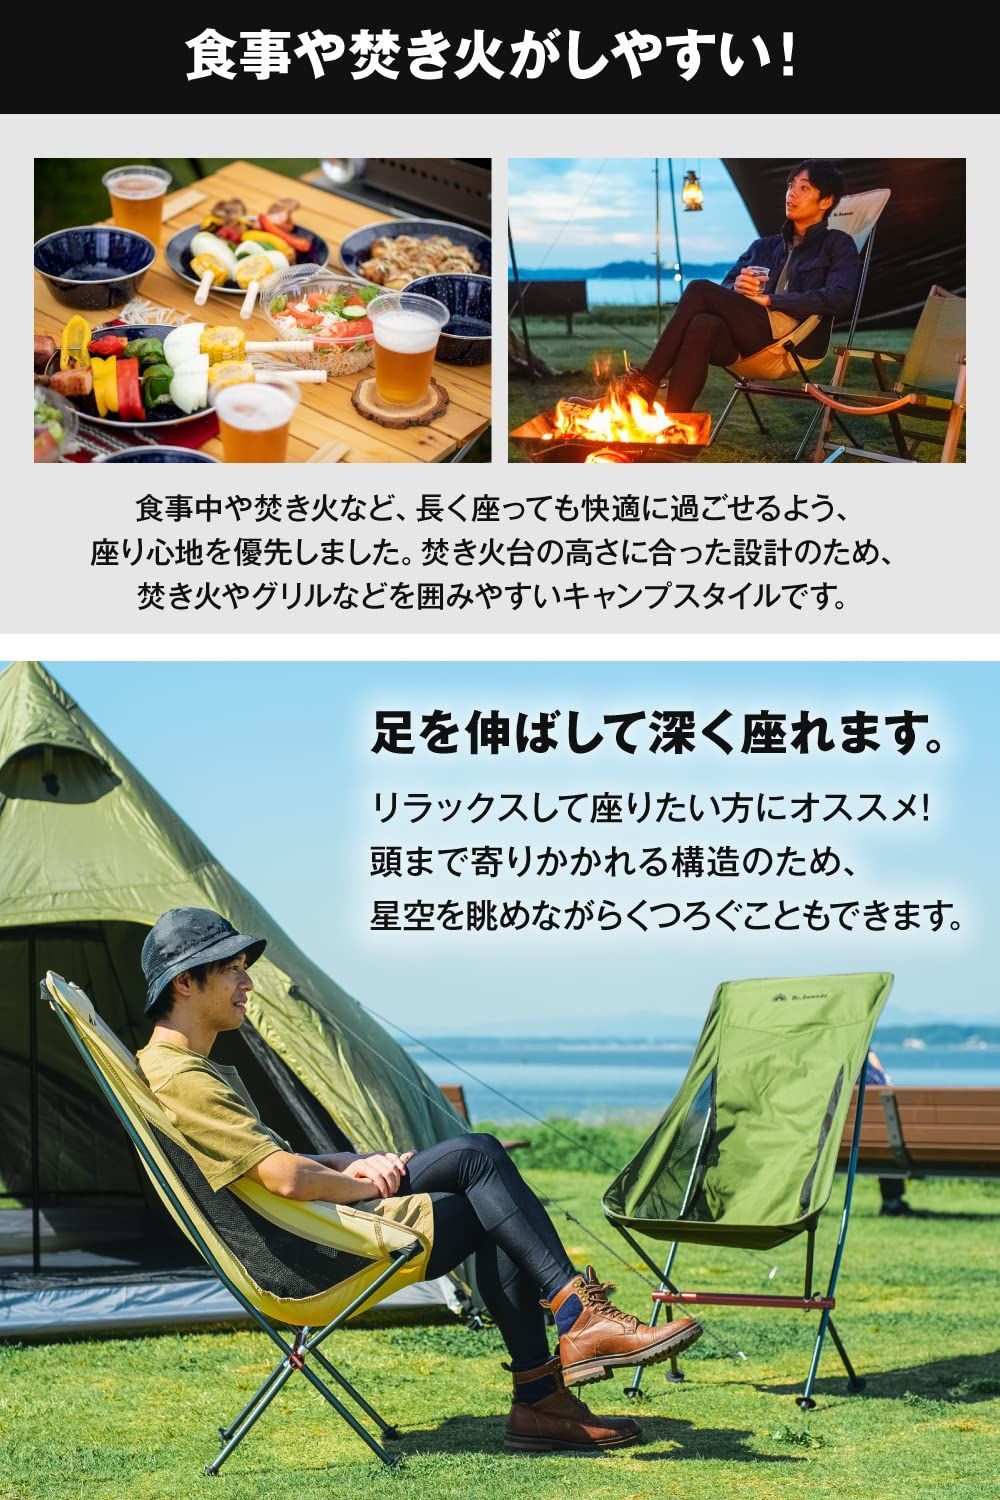 MR. NOMADS アウトドア 椅子 【軽量】折りたたみ コンパクト キャンプ